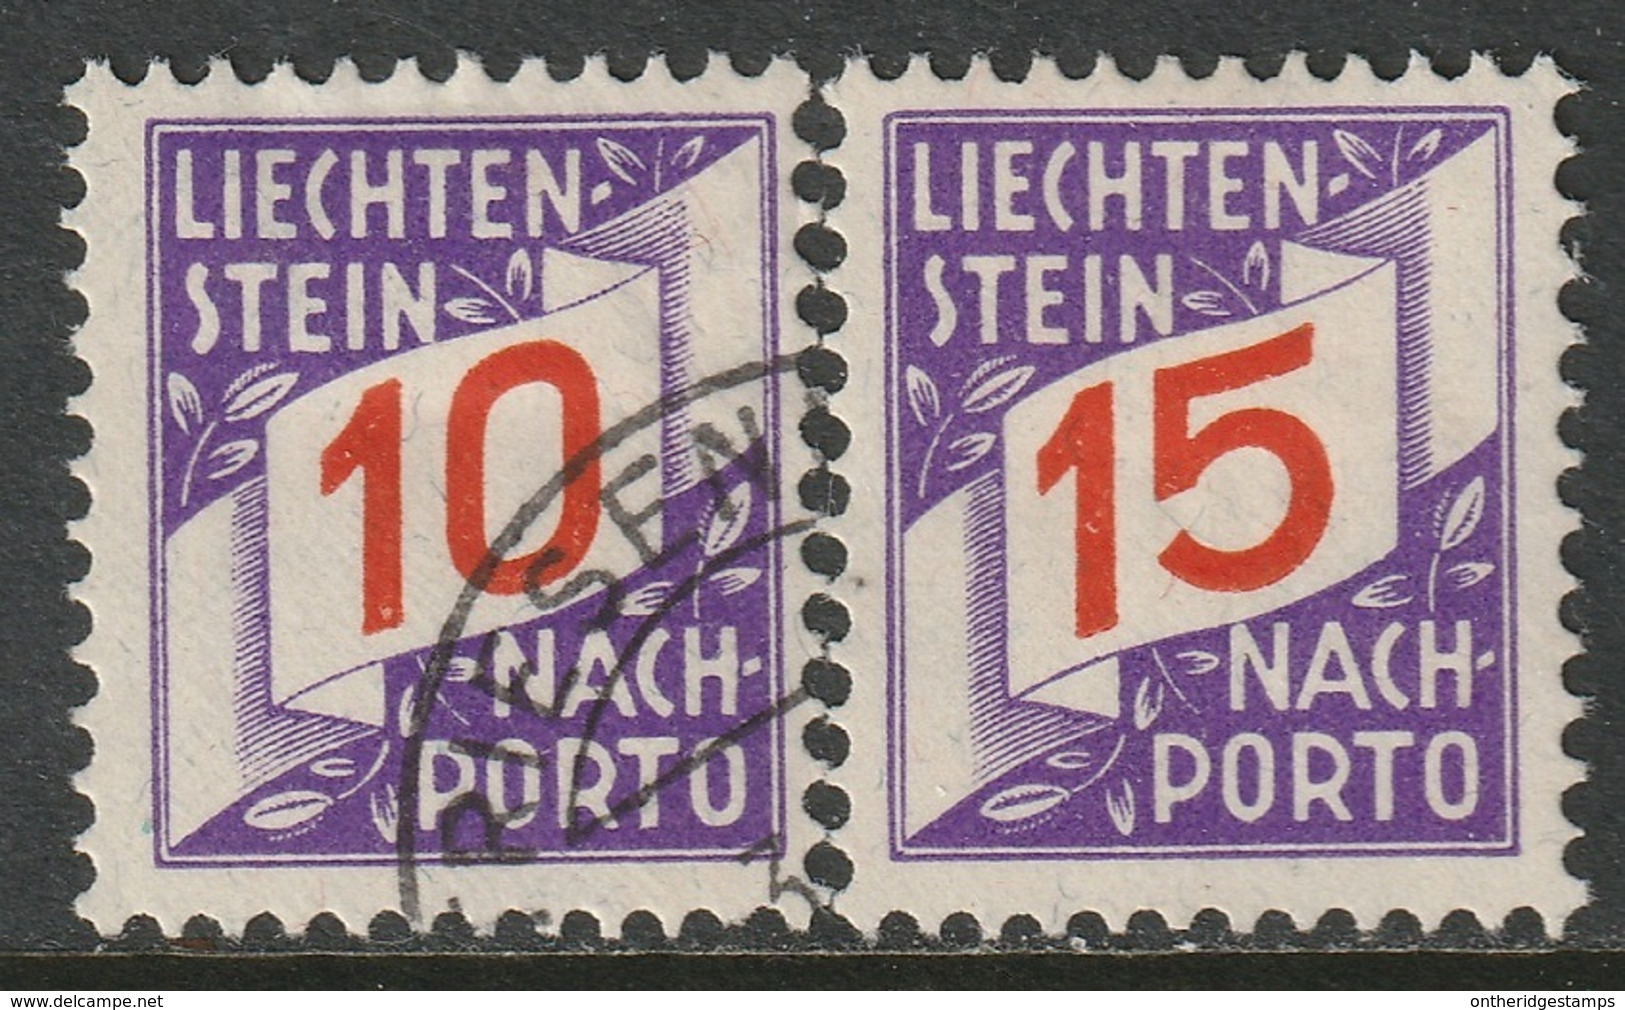 Liechenstein 1928 Sc J14-15  Postage Due Used/MH - Impuesto